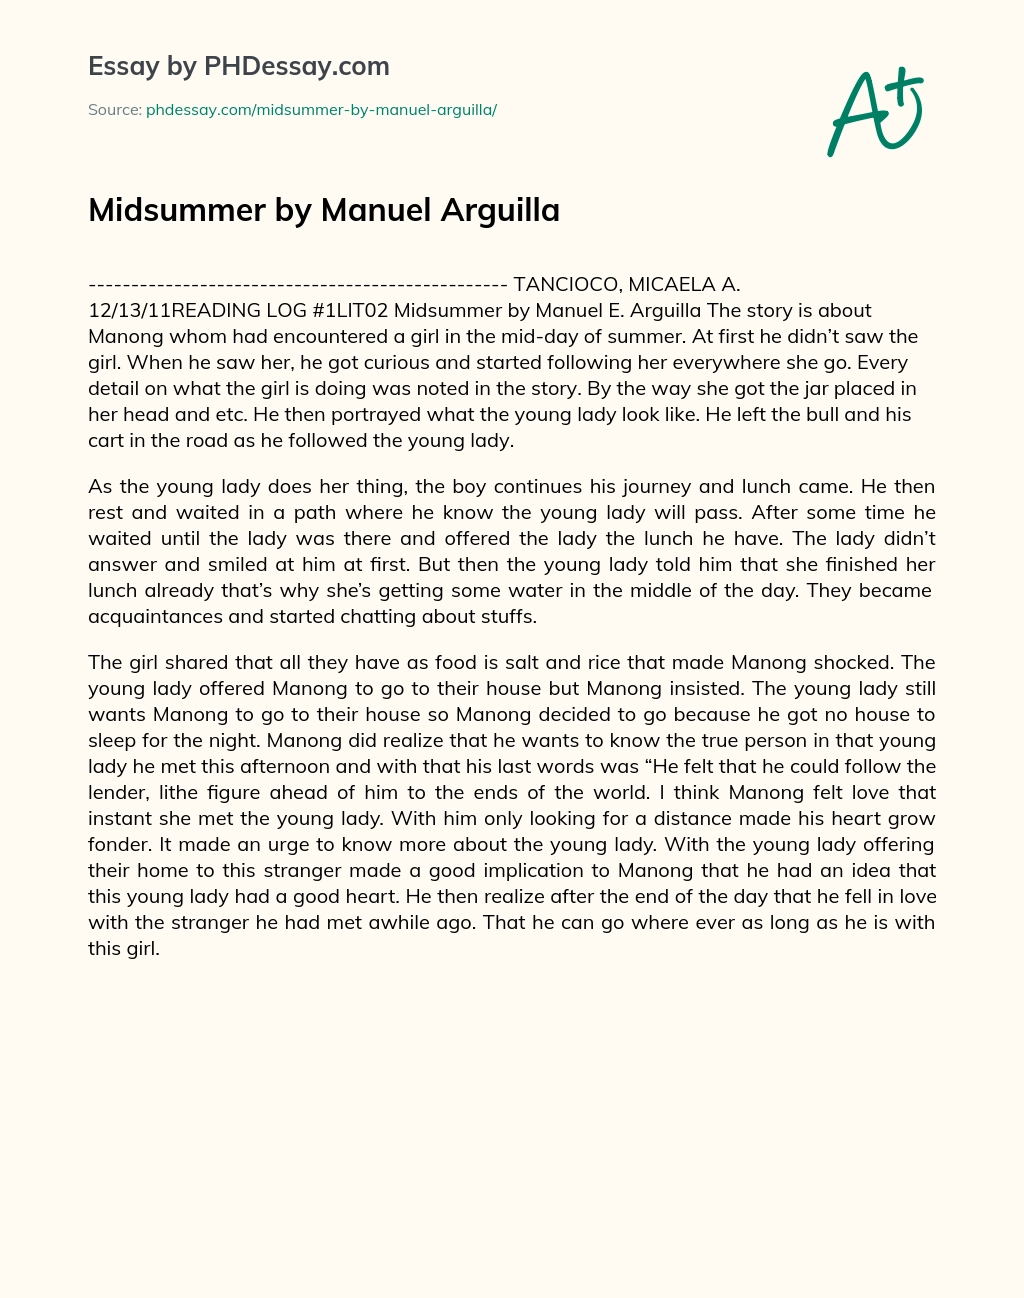 Midsummer by Manuel Arguilla essay